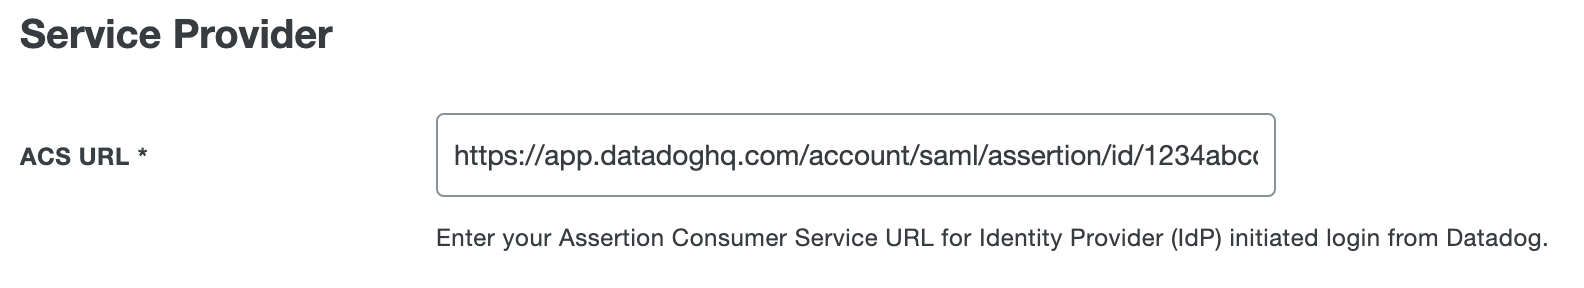 Add Datadog ACS URL